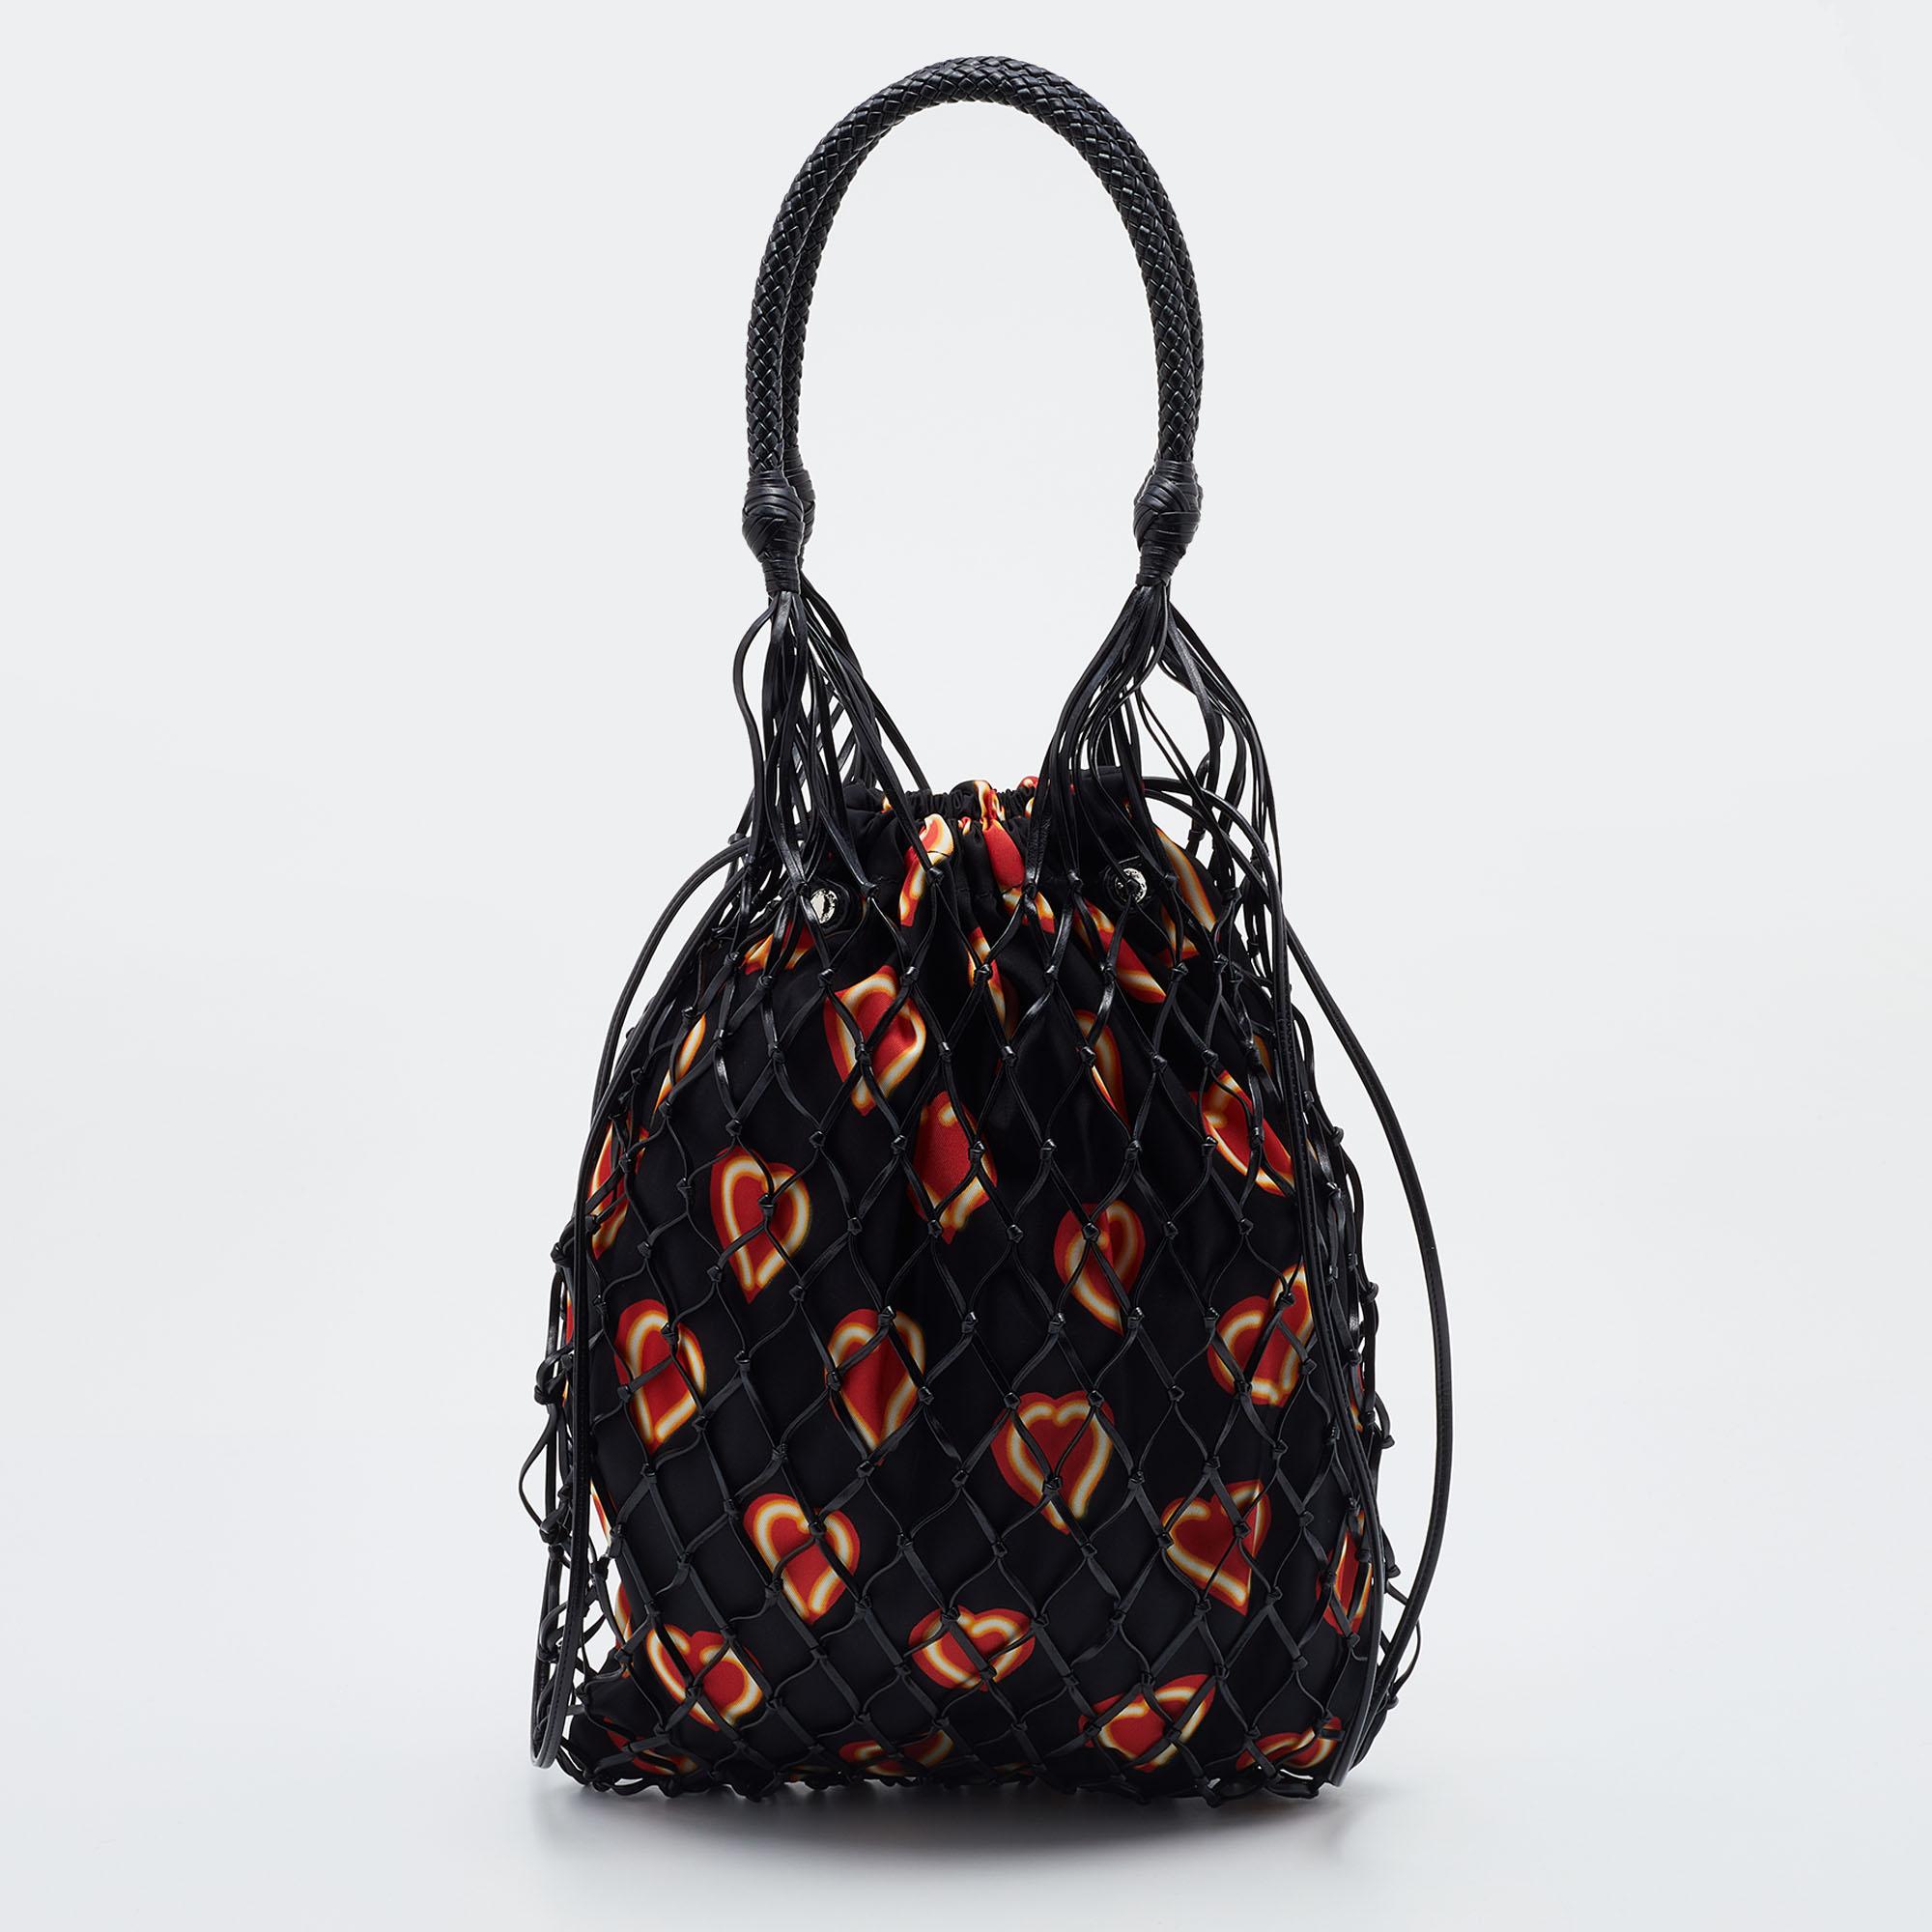 fishnet bag luxury